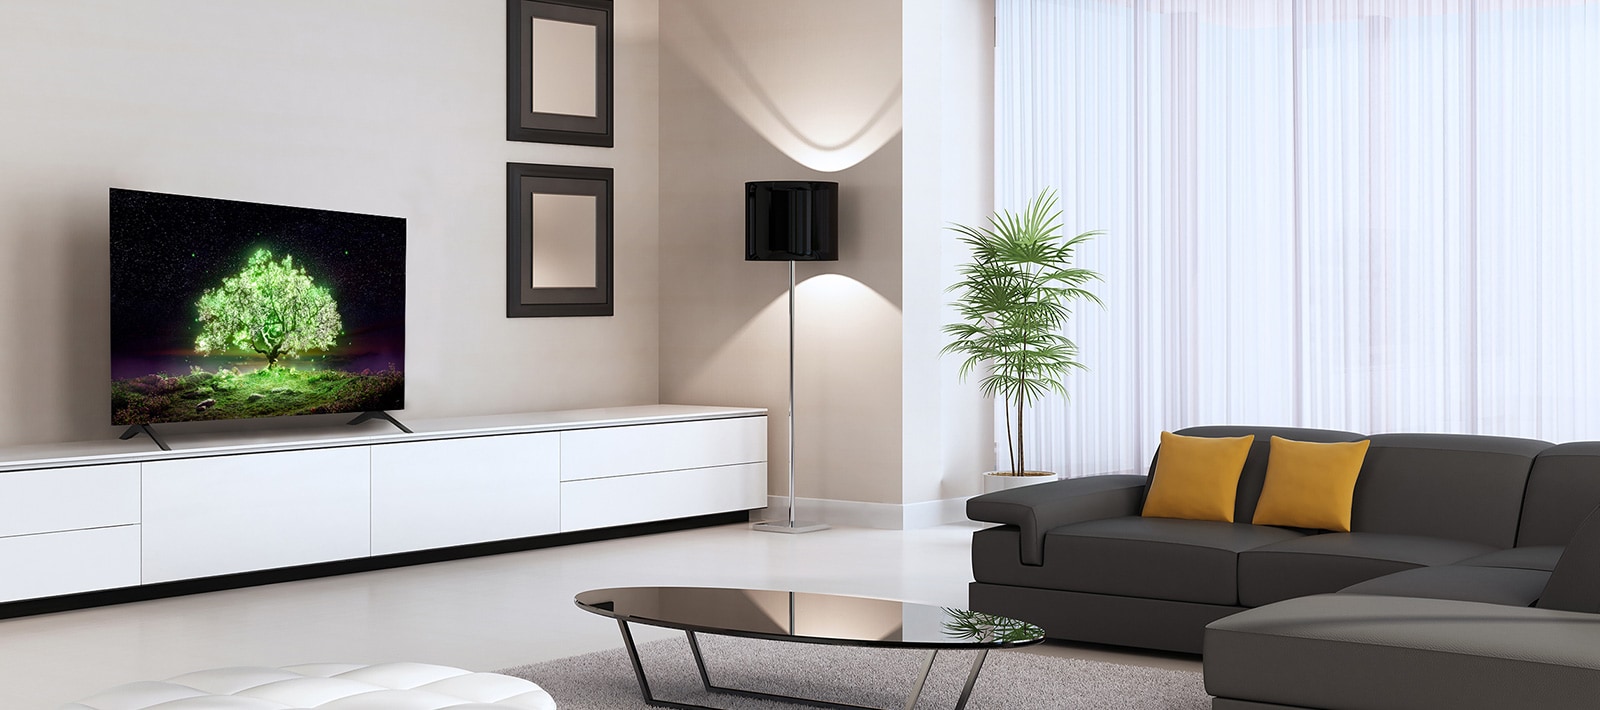 Televize OLED A1 umístěná ve obývacím pokoji. V televizi můžete vidět obraz jasně zářícího zeleného stromu.